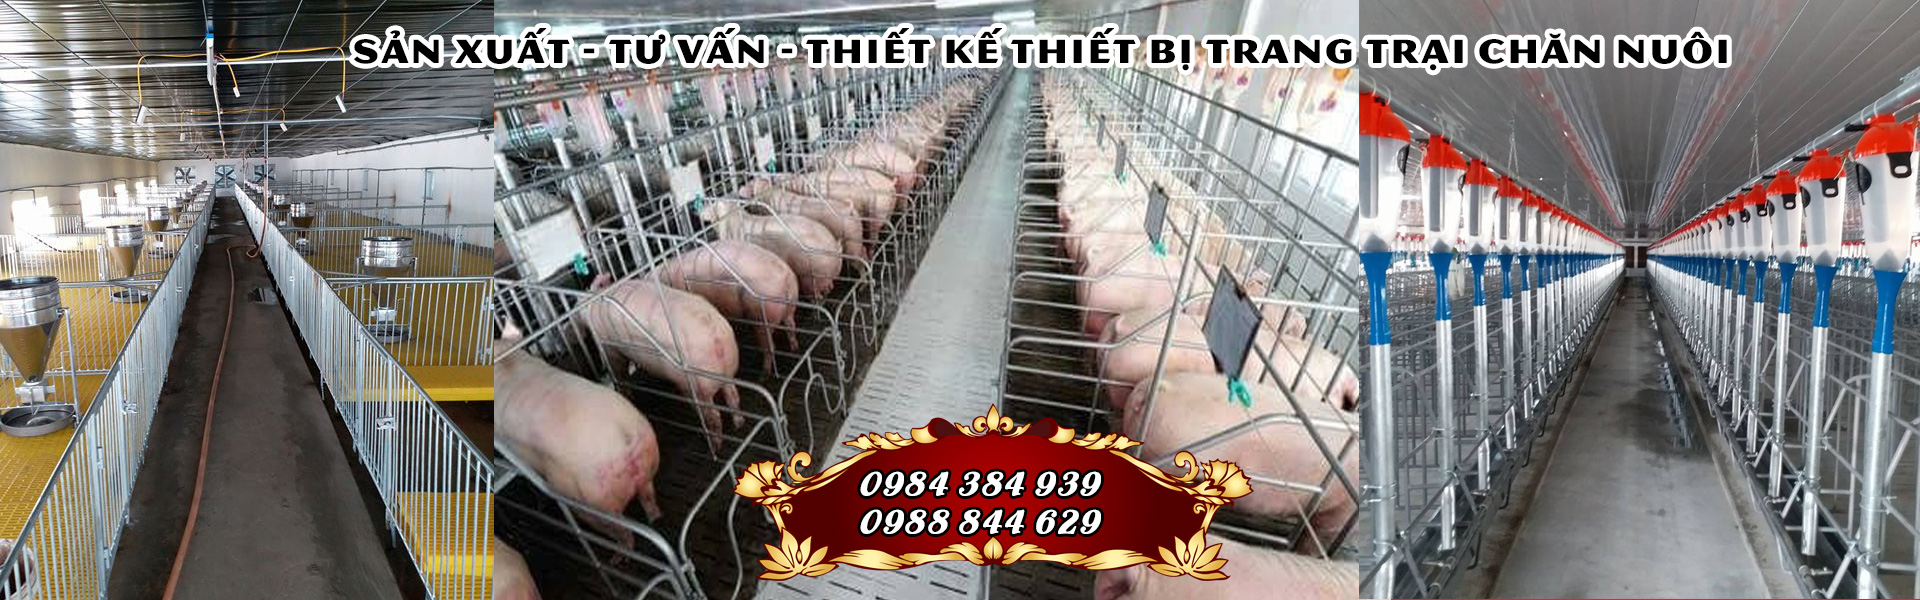 Thiết bị chăn nuôi tại Thanh Hóa